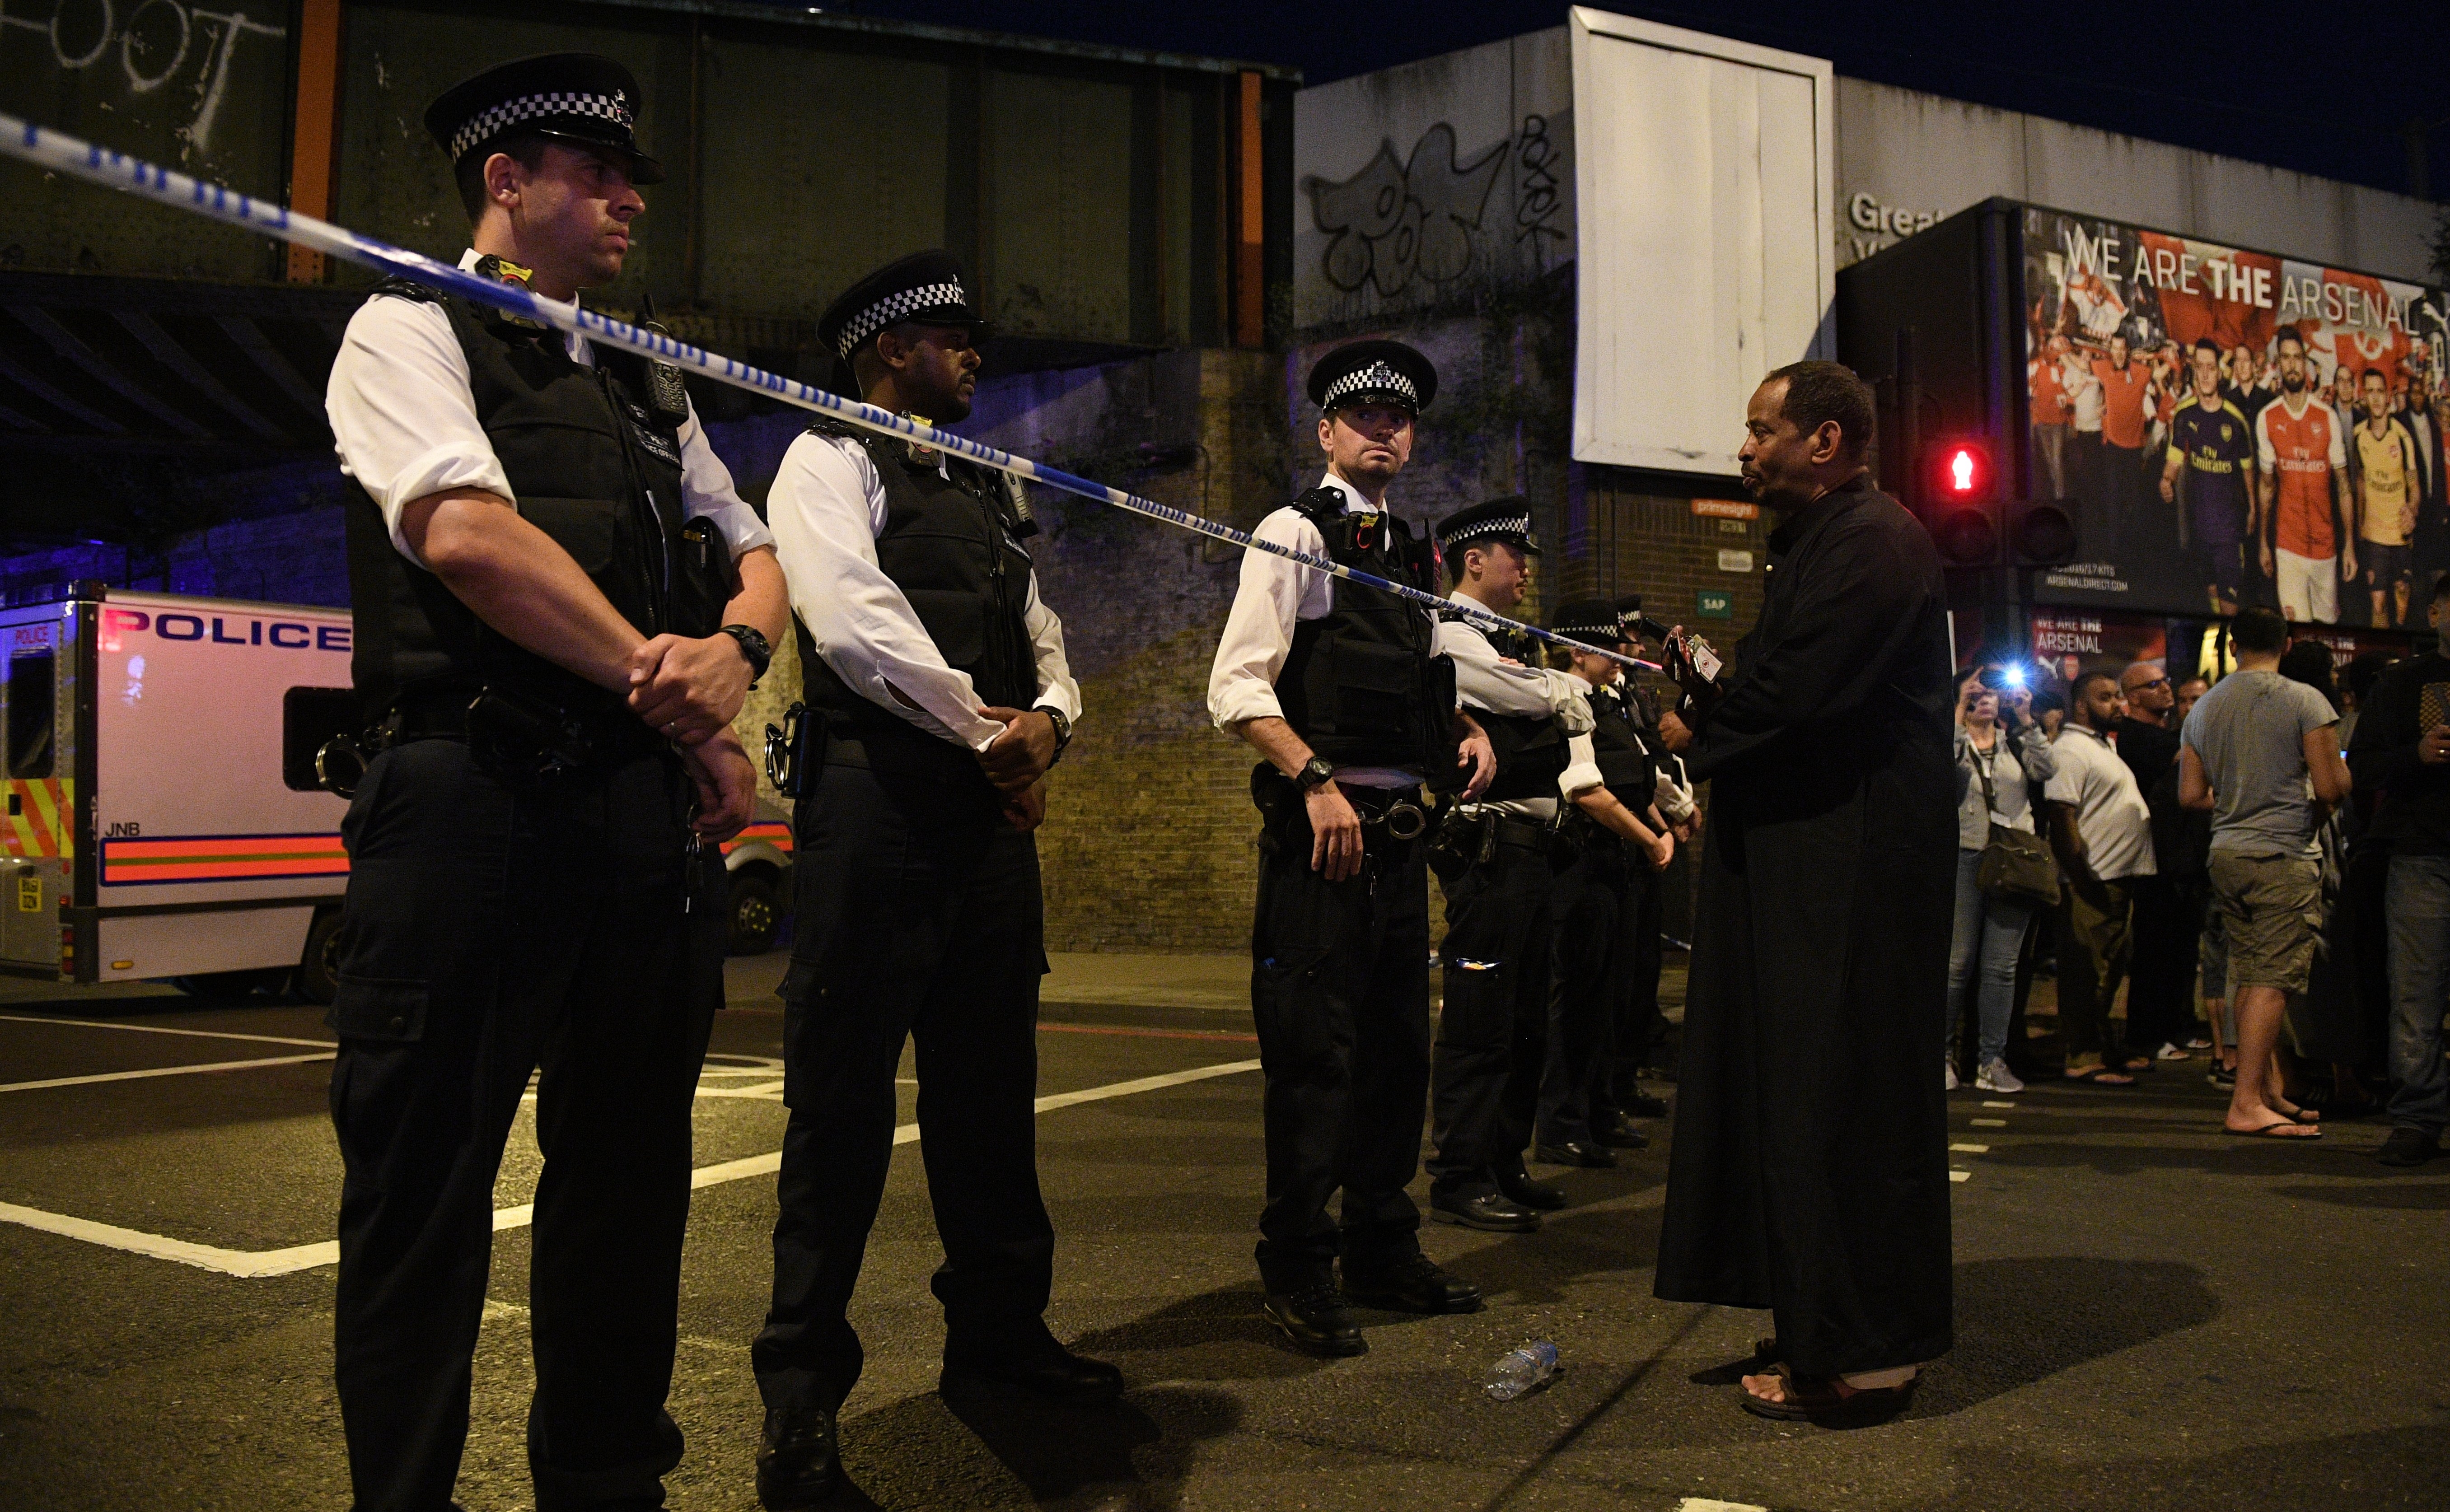 Ван връхлетя върху пешеходци в североизточната част на Лондон близо до една от най-големите джамии в британската столица във "Финсбъри парк". Инцидентът стана в района на улица „Севън систърс роуд”. Пострадали са 11 души, по последна информация има една жертва. Мястото и времето не са случайни, а медиите на Острова говорят за атентат на отмъщението - отмъщение за атаката от 4 юни на "Лондон бридж".